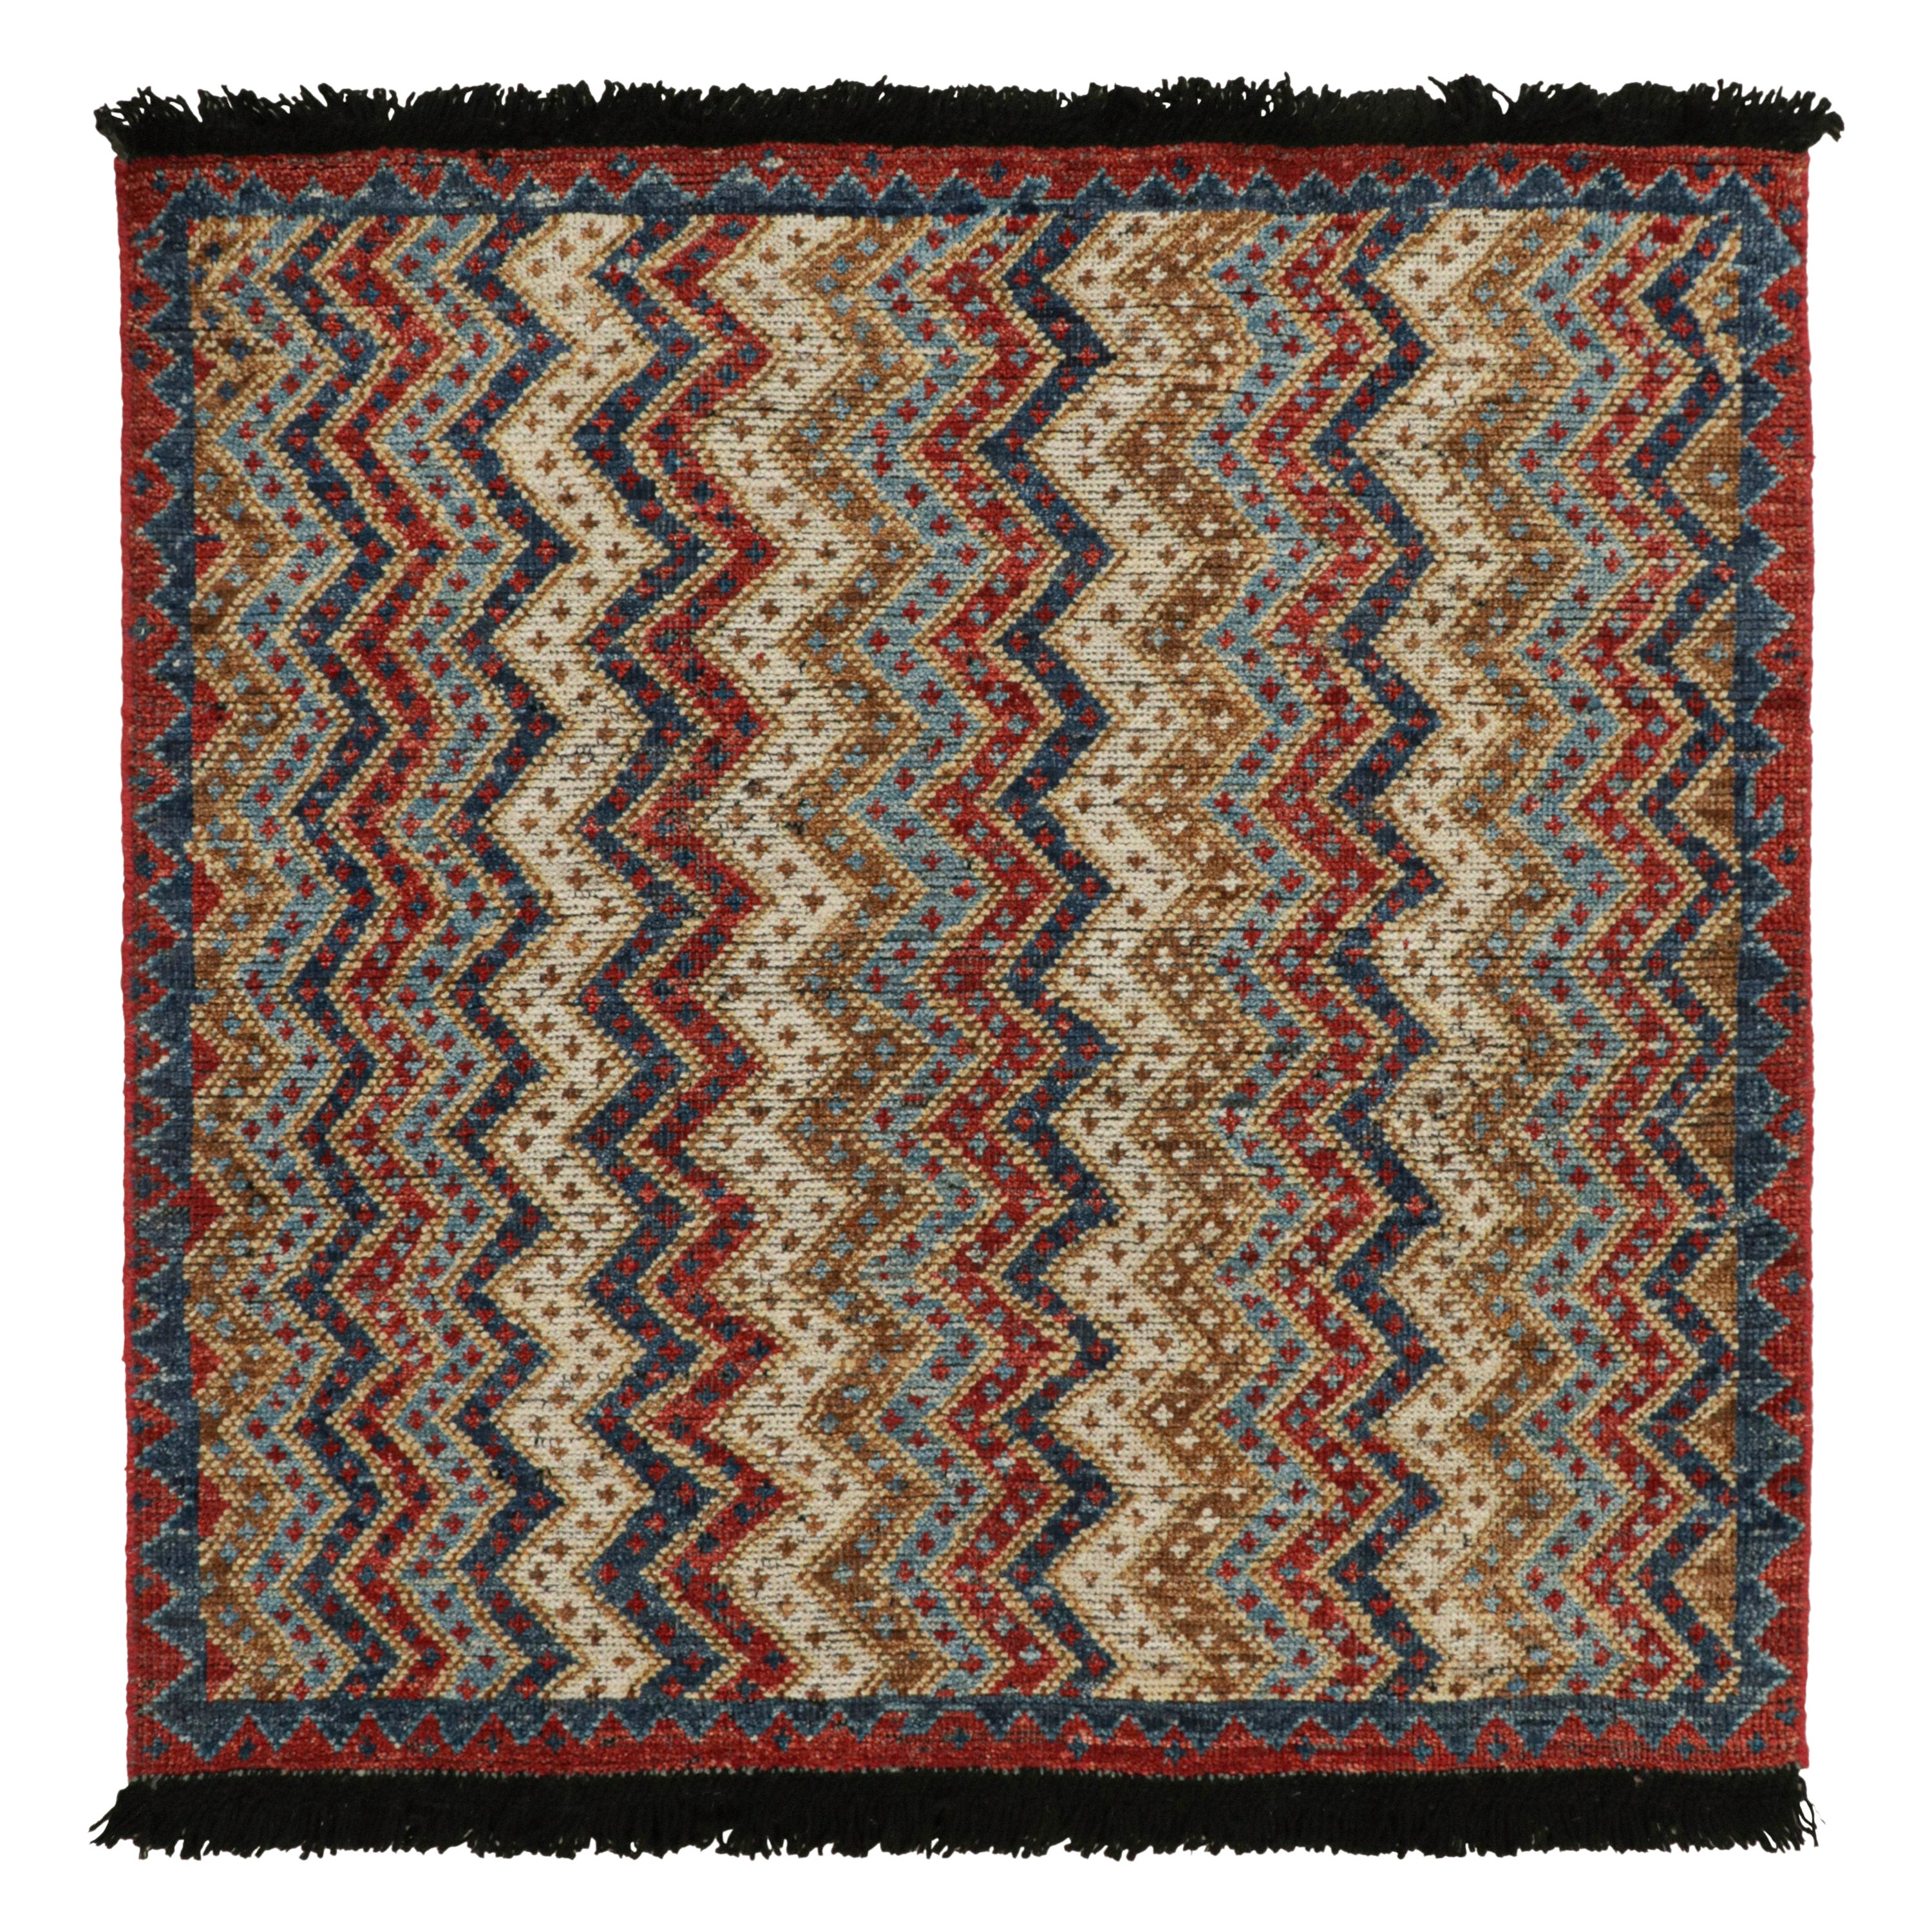 Tapis antique de style tribal de Rug & Kilim à motifs rouges, bleus, bruns et blancs